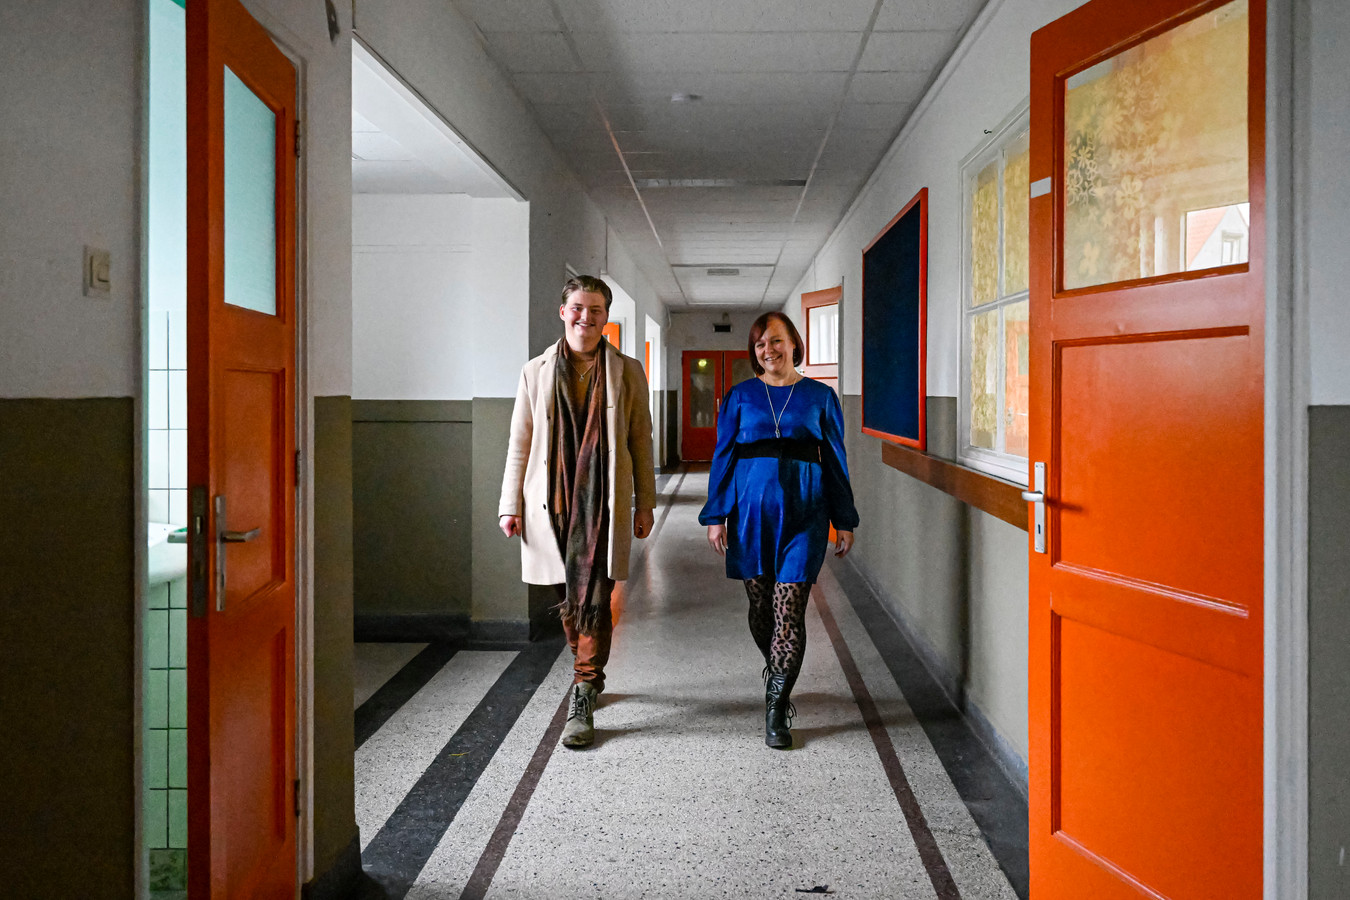 Initiatiefnemers van kunstatelier Arie Fransen (links) en zijn tante Ariette Jung die kinderopvang en een particuliere school wil beginnen, lopen 'hun' karakteristieke gang met granito-vloer.